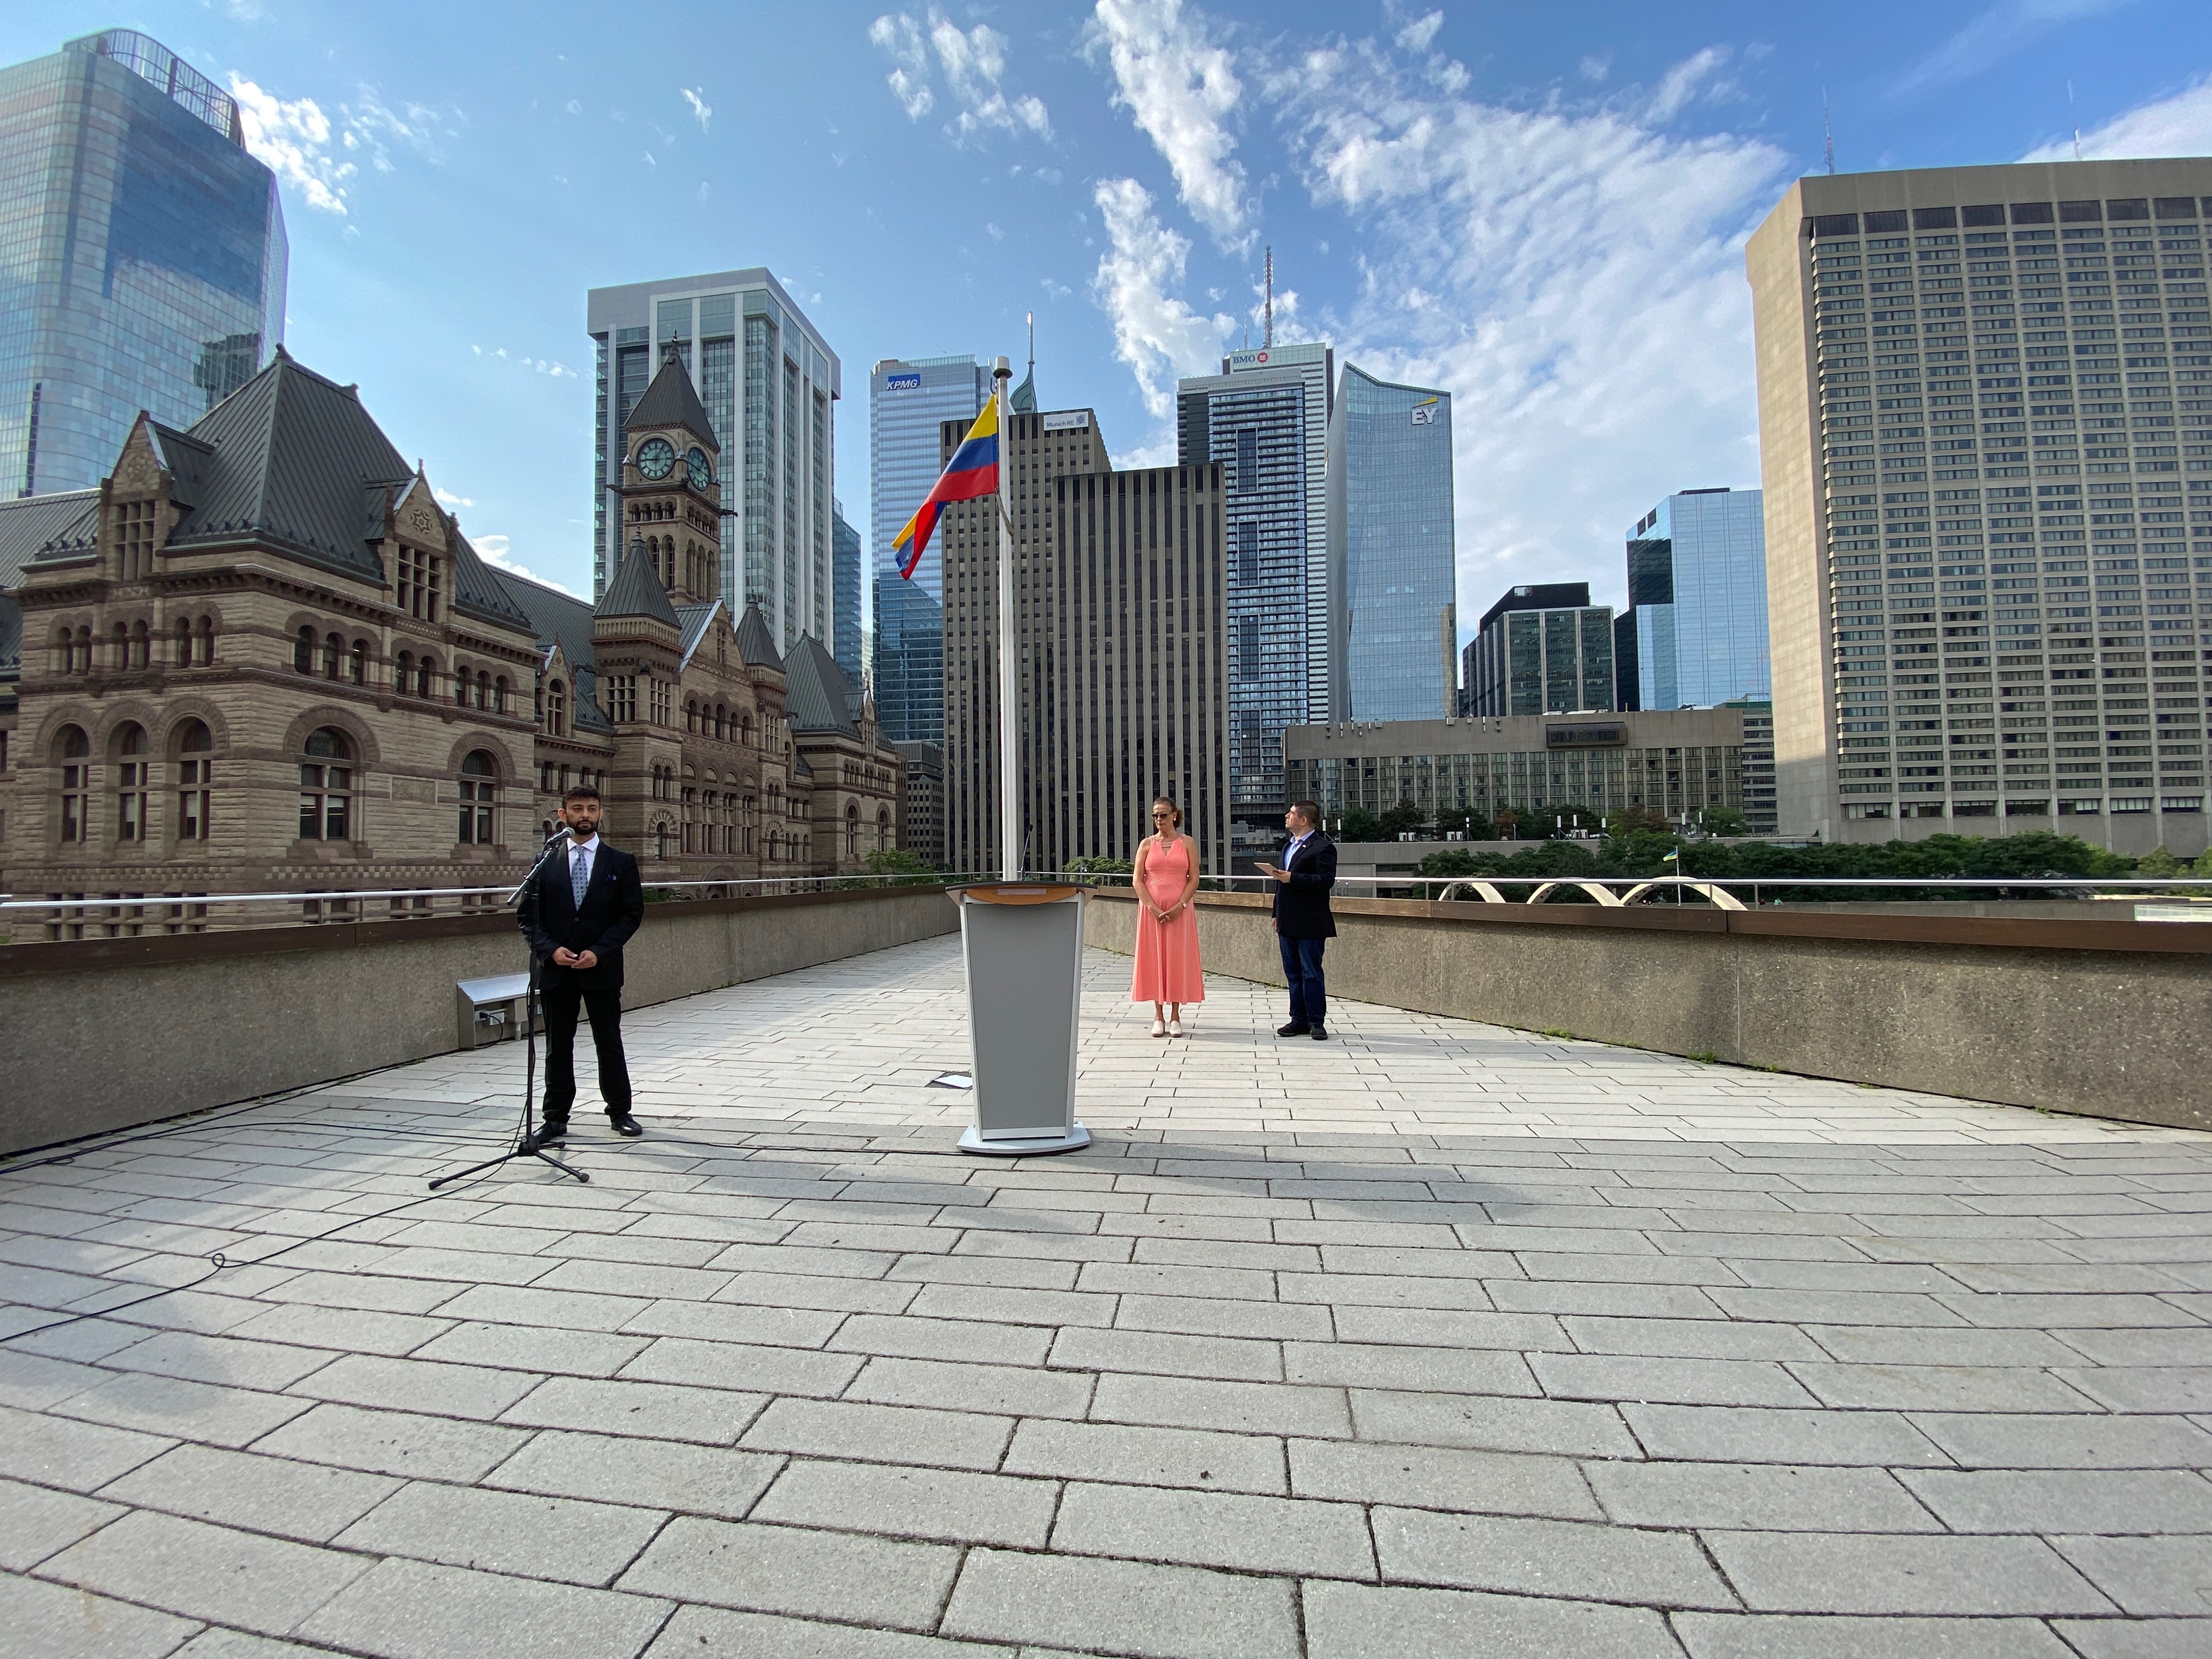 Bandera colombiana fue izada en el City Hall de Toronto